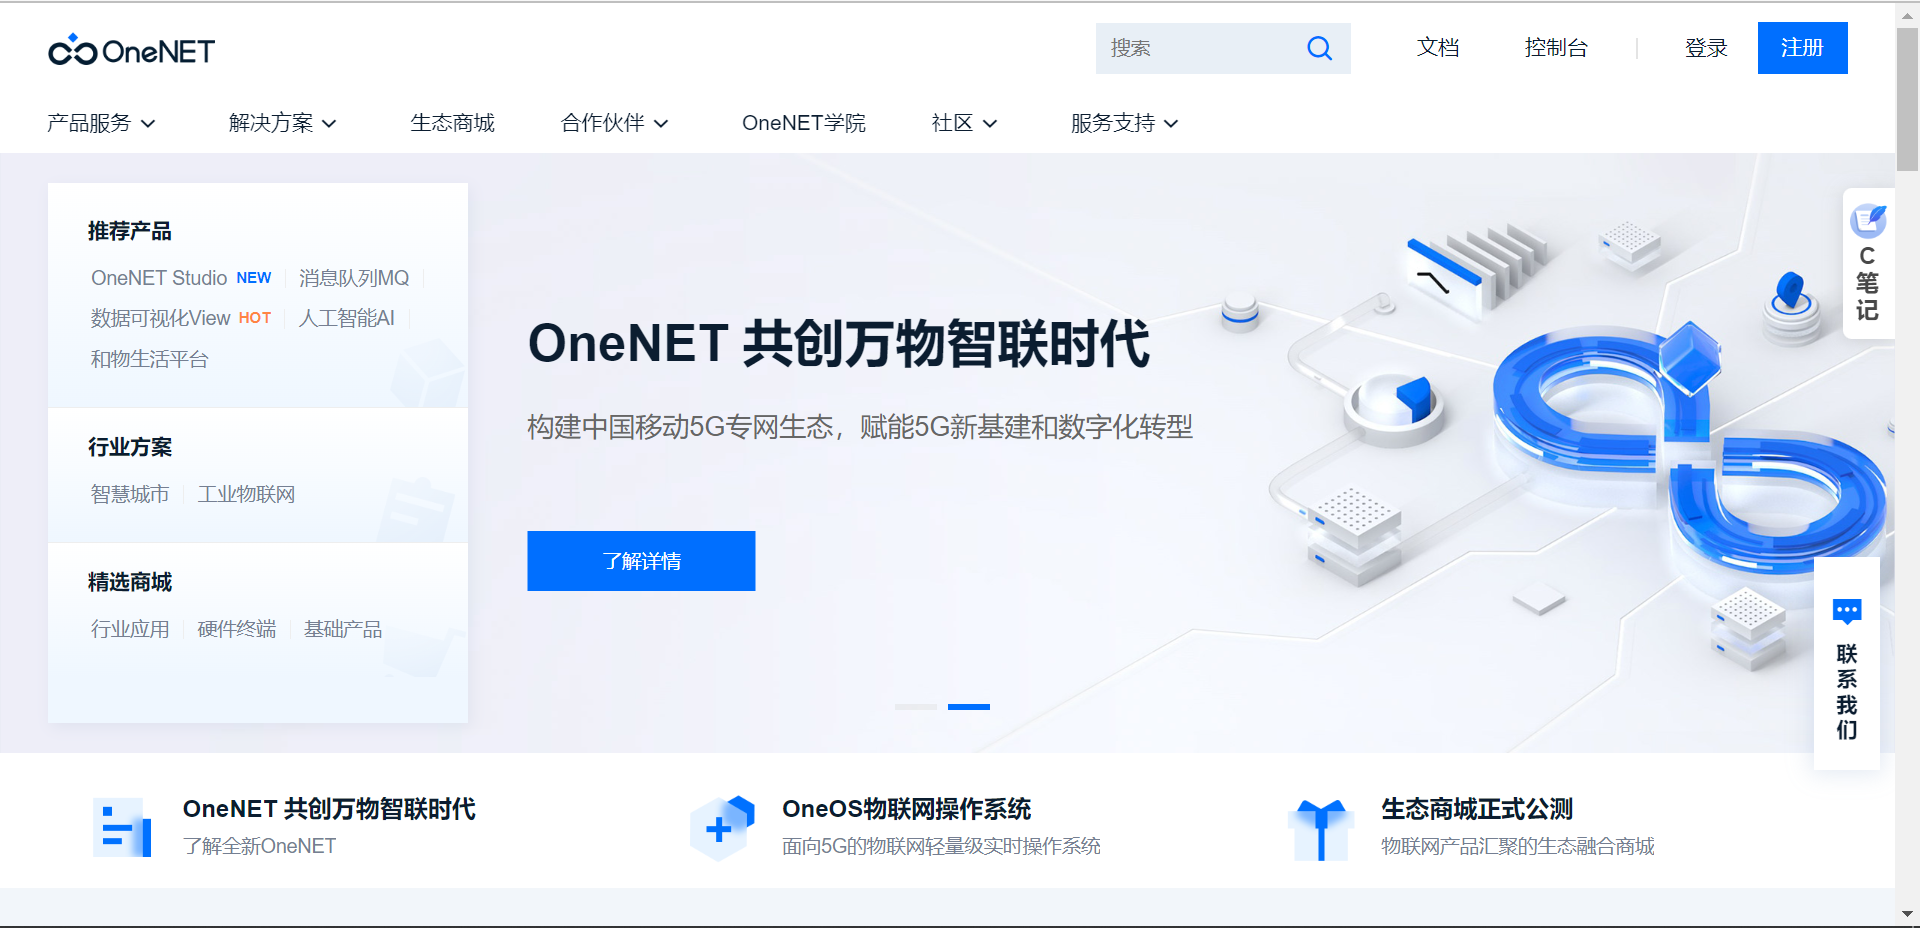  #打卡不停更#  基于OneNet平台设计的多节点温度采集系统-4G上云-鸿蒙开发者社区